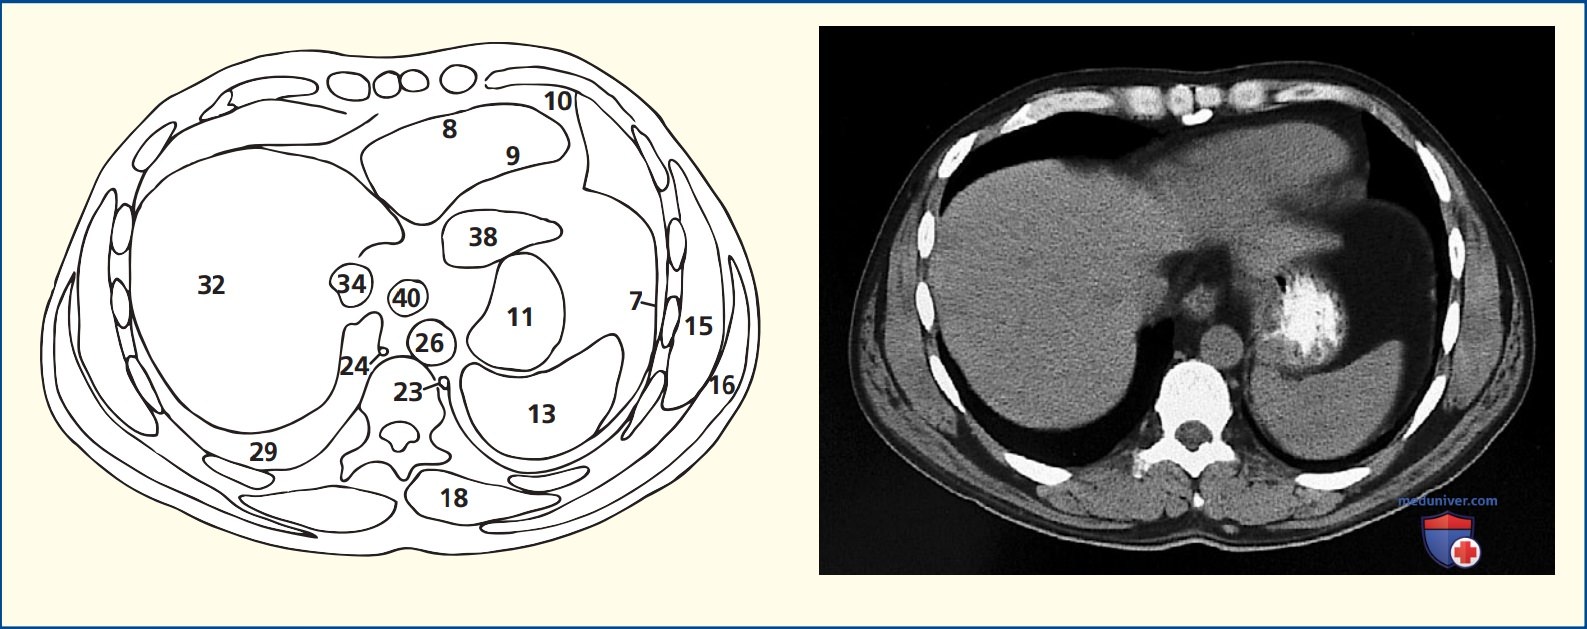 Анатомия аксиального среза живота через тело десятого грудного позвонка (Th10) и мечевидный отросток грудины